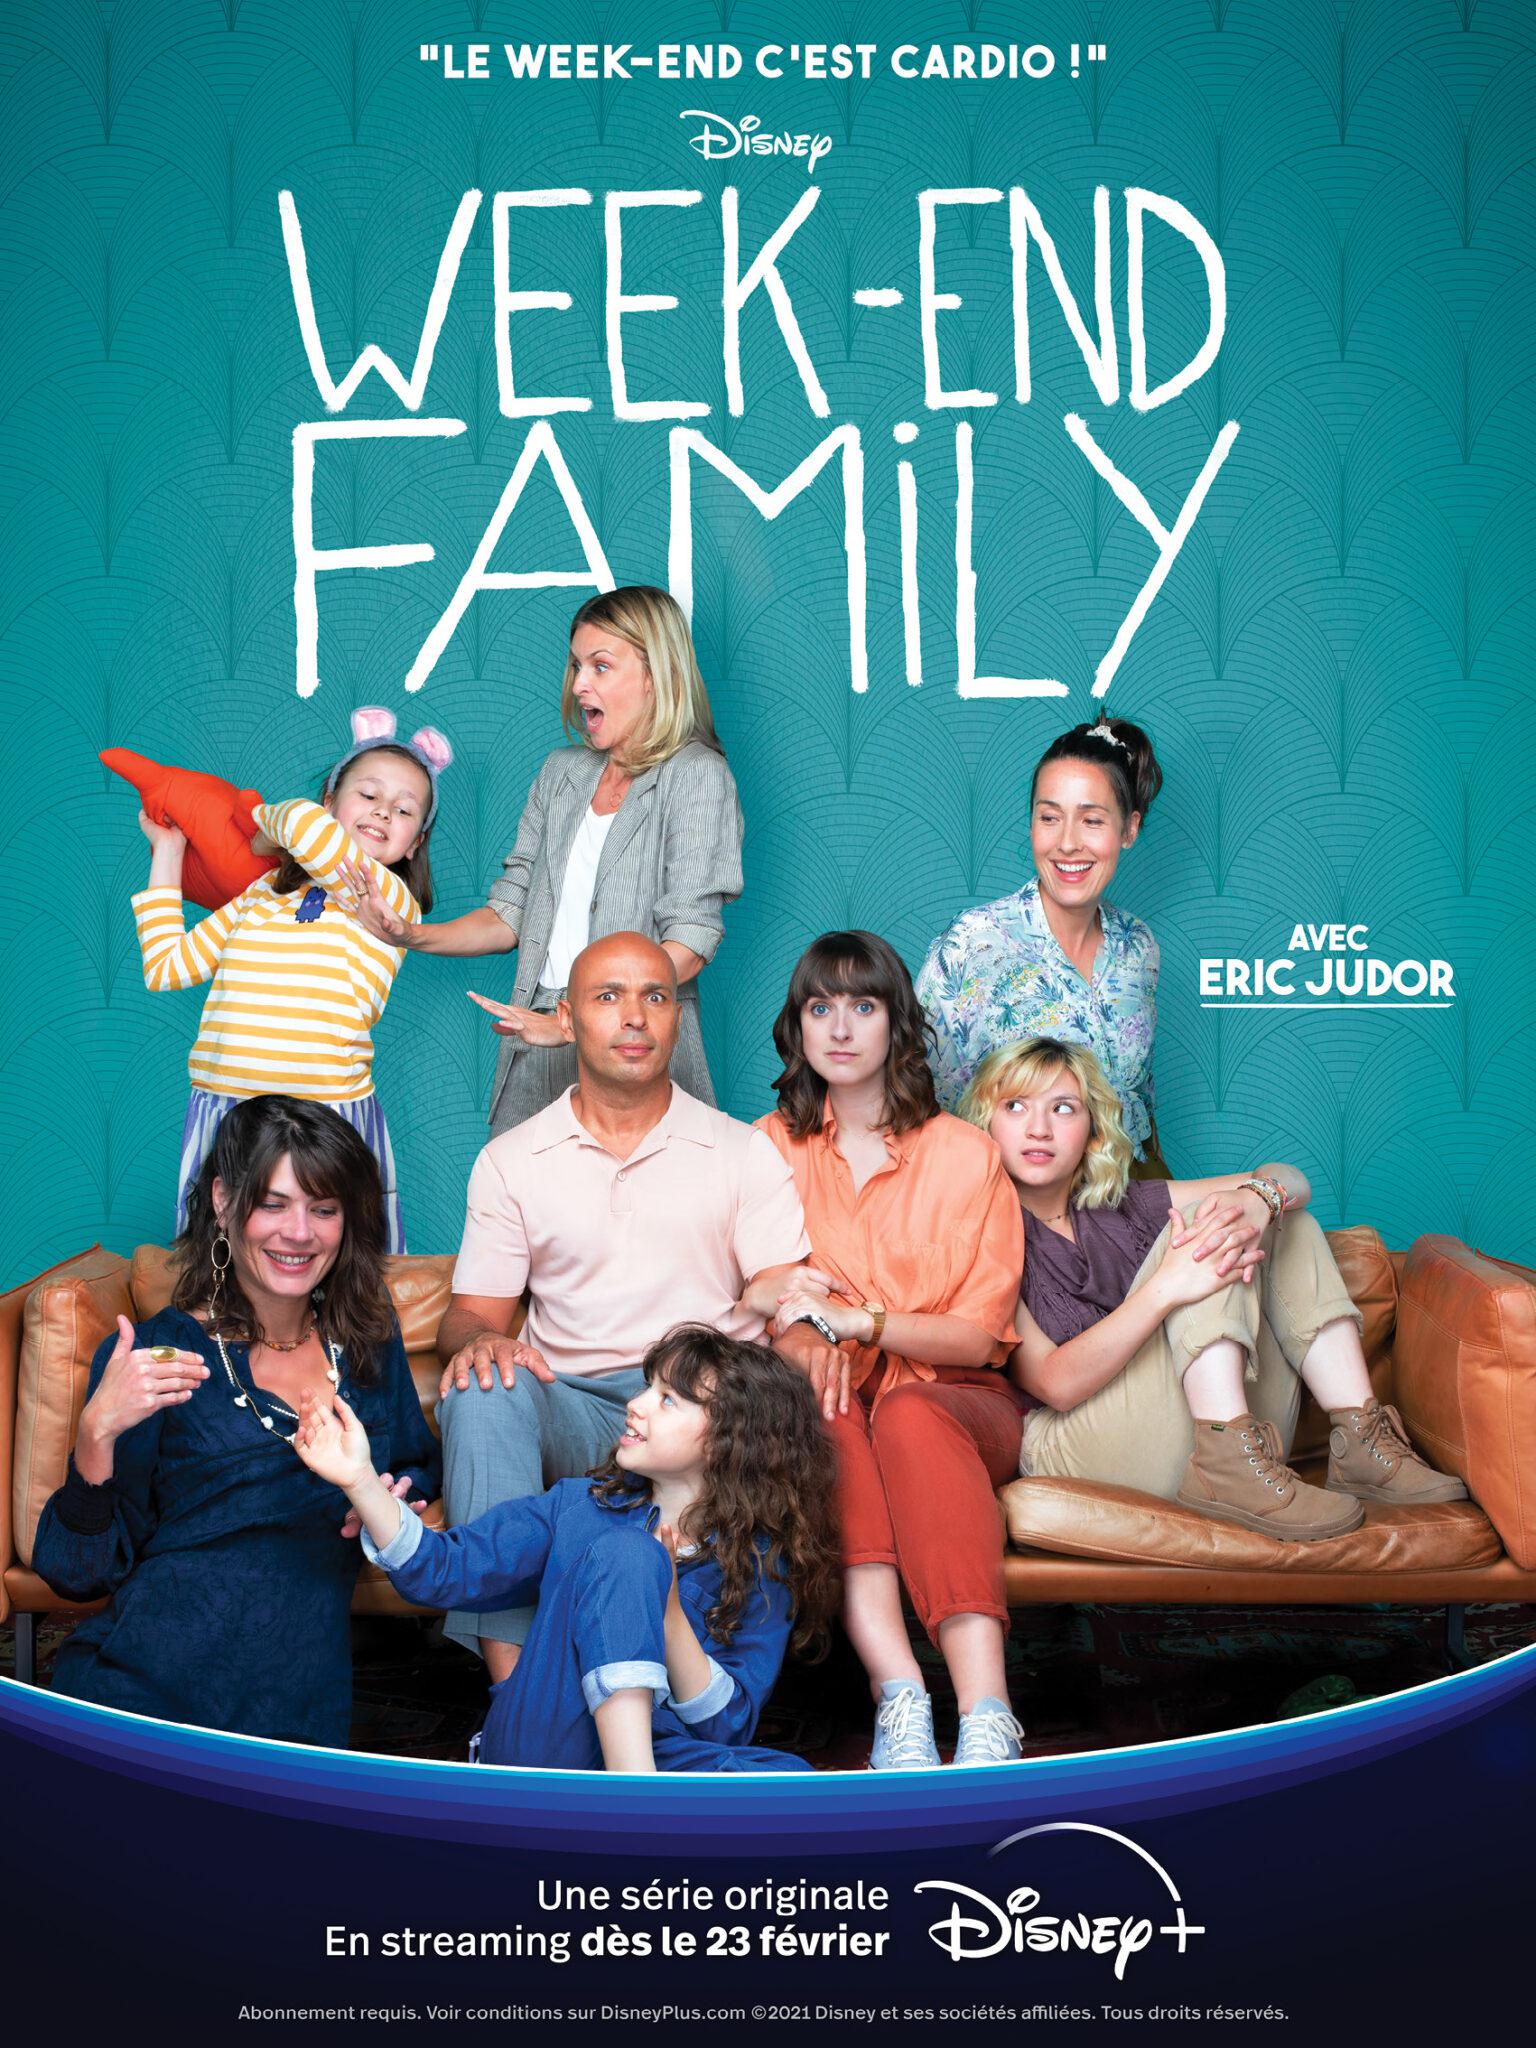 TV ratings for Weekend Family in Japan. Disney+ TV series